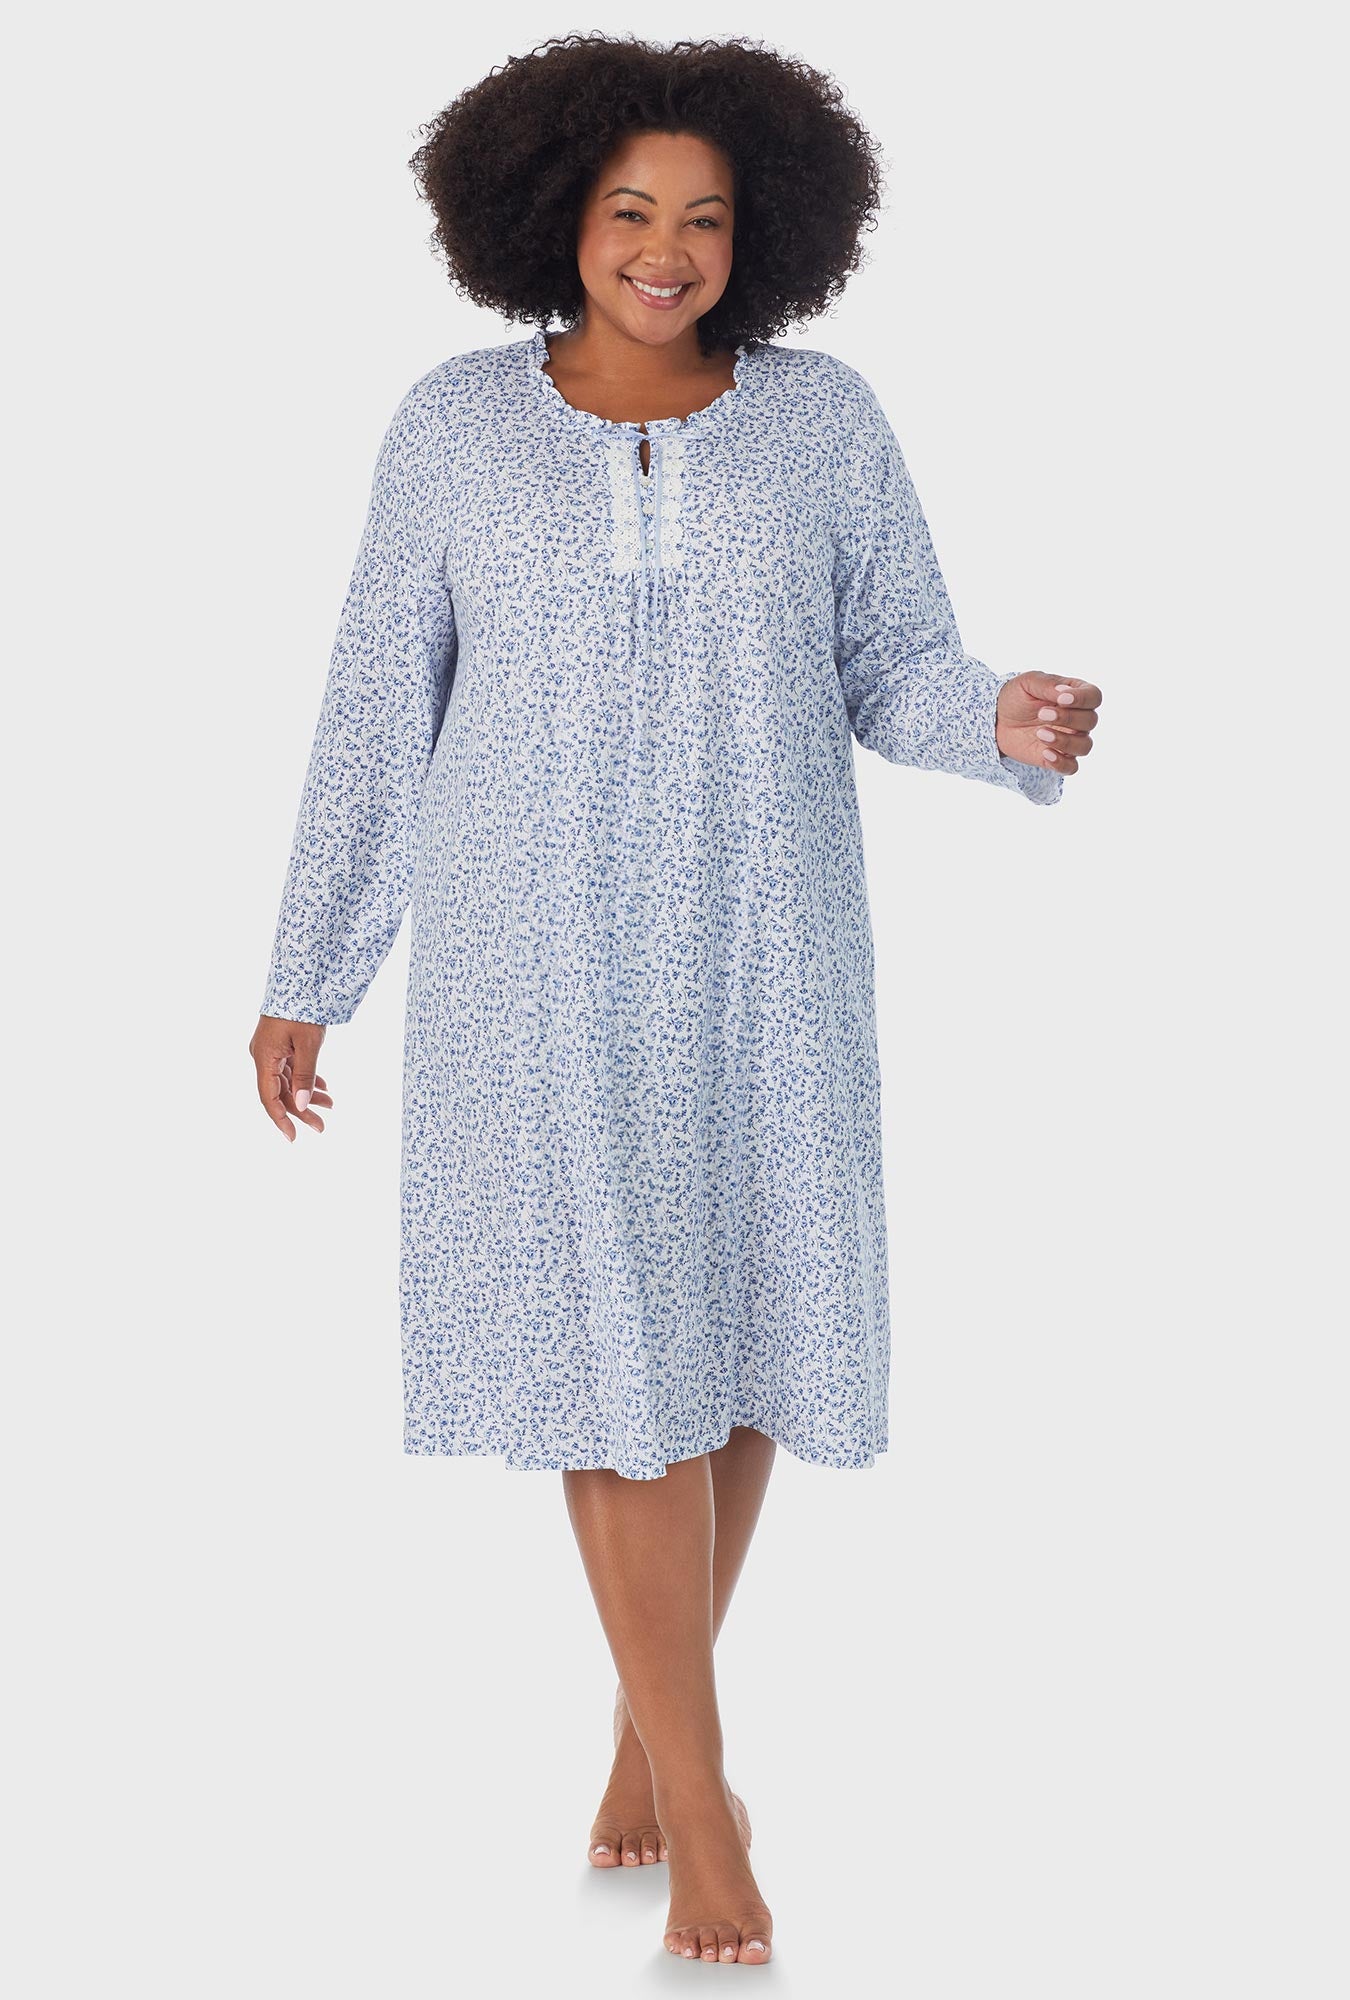 Aria Women's Sleeveless 100% Cotton Nightgown, Sizes S-5X